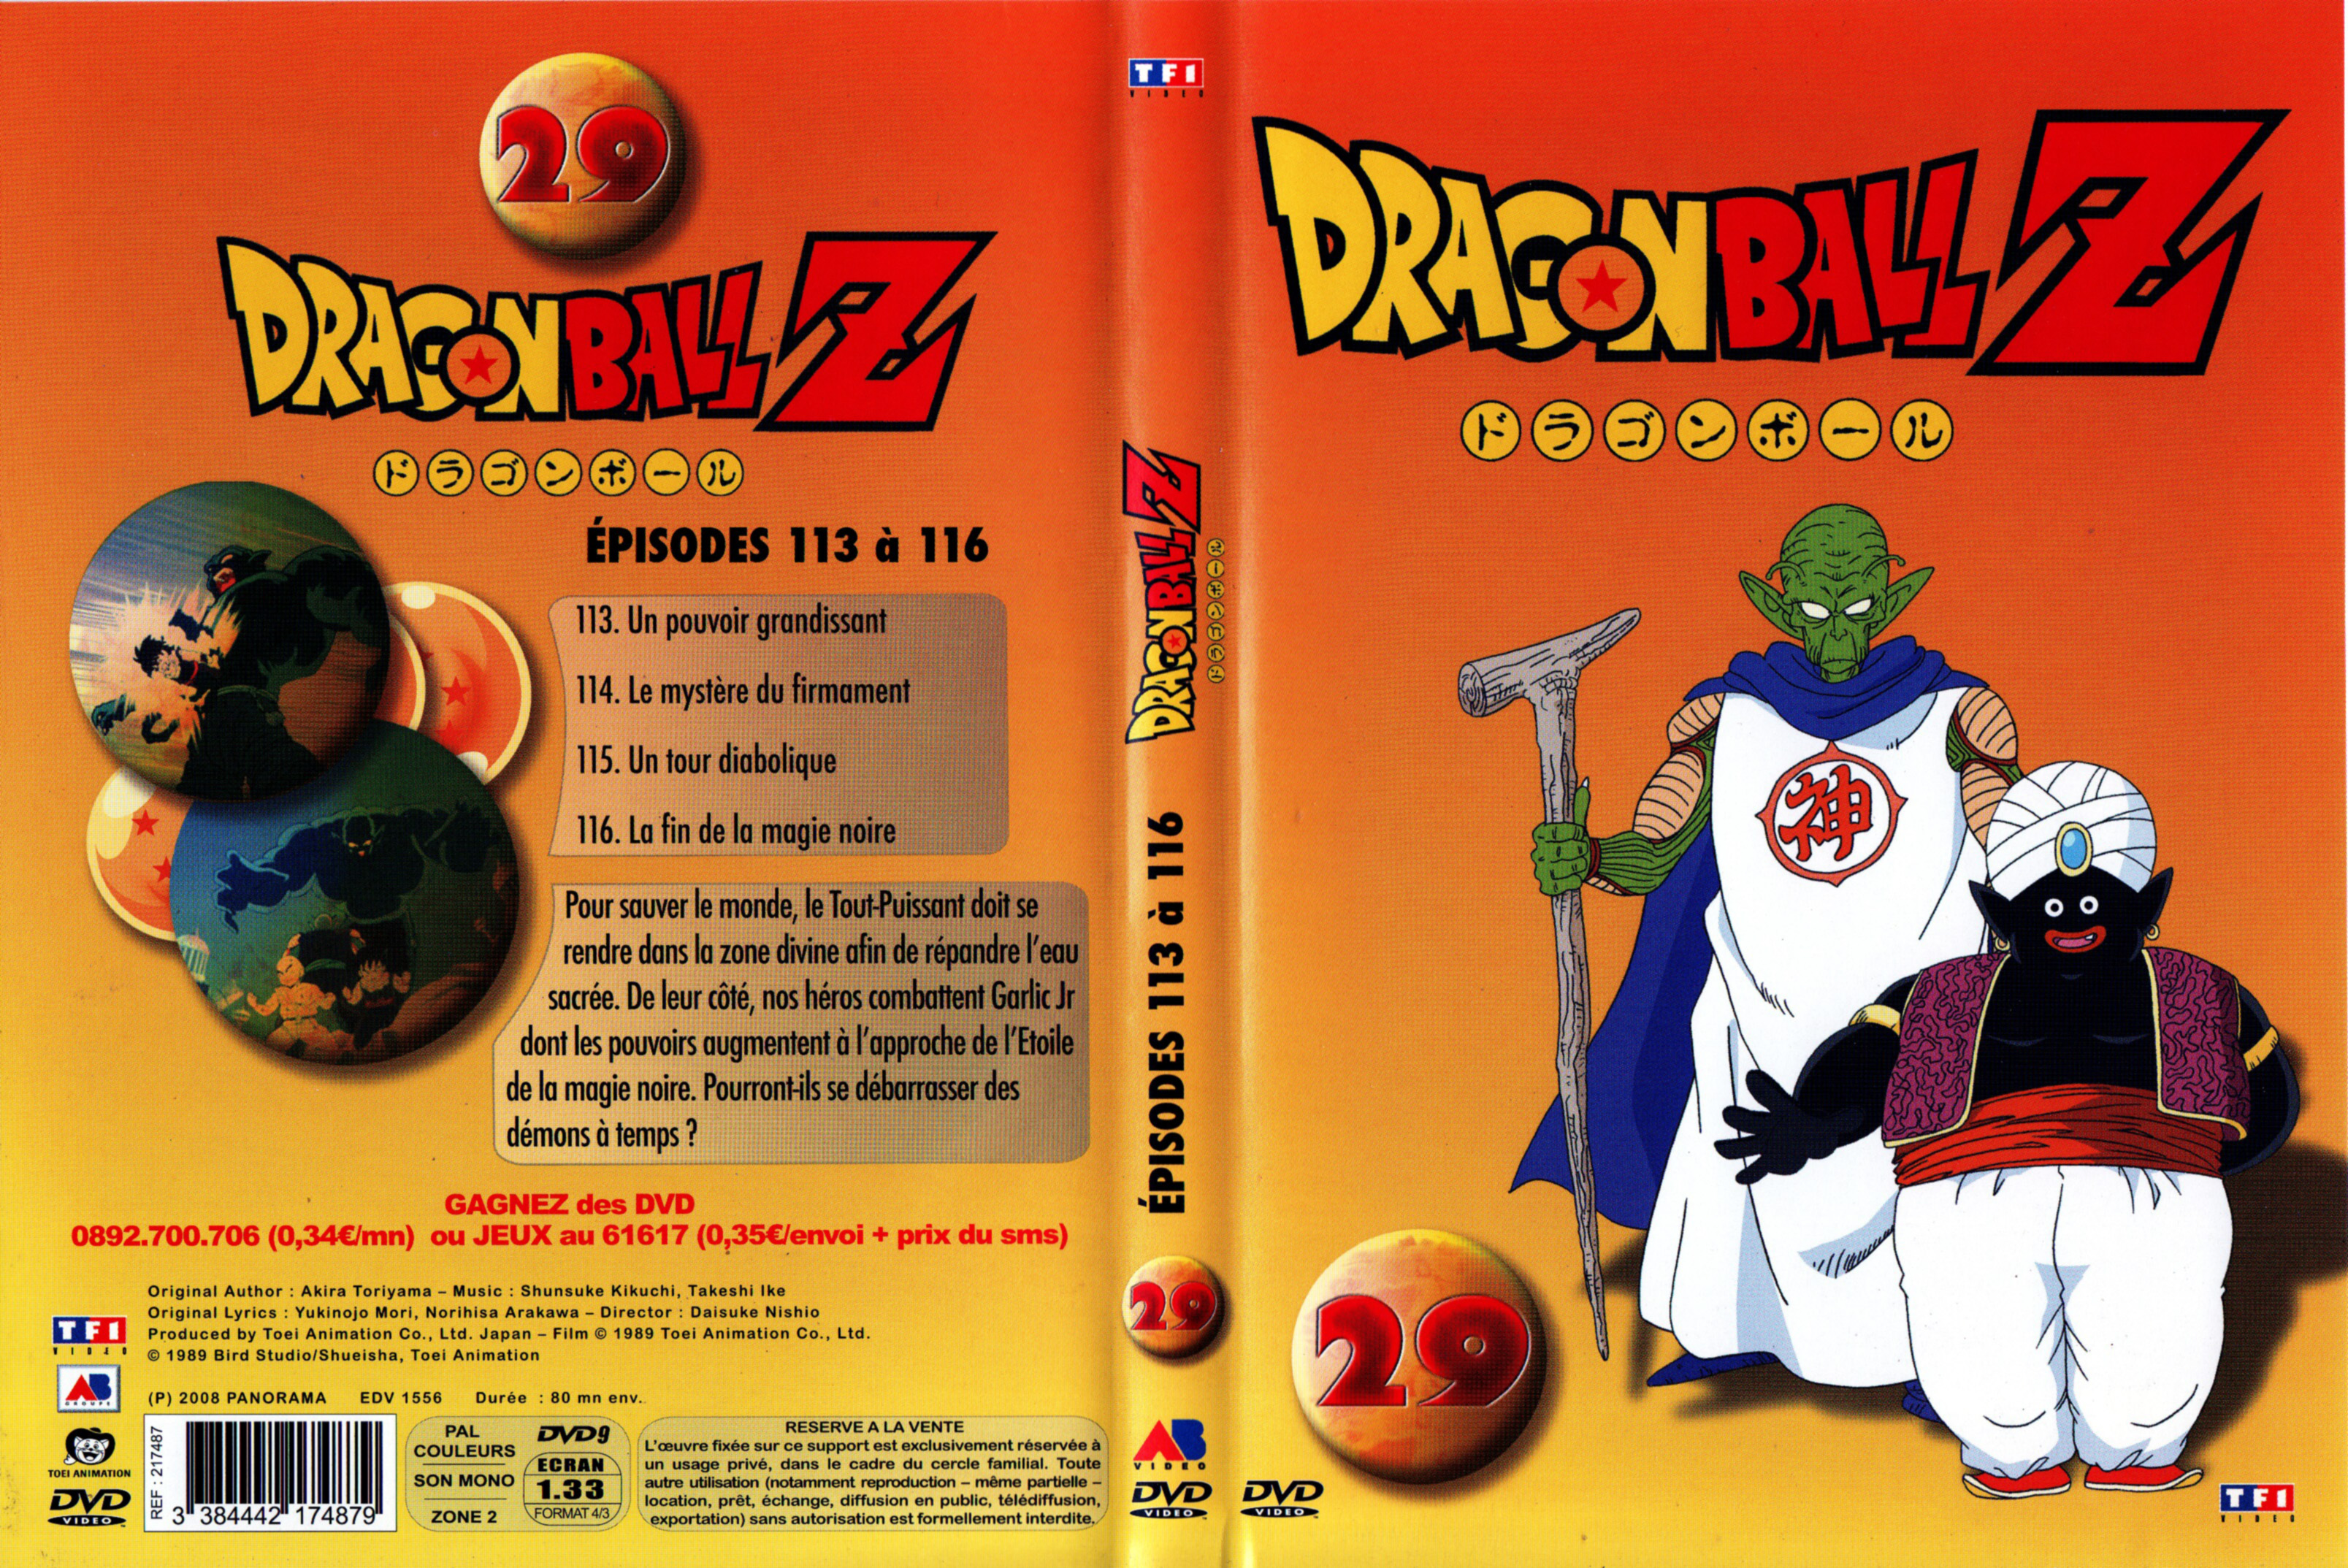 Jaquette DVD Dragon Ball Z vol 29 v2